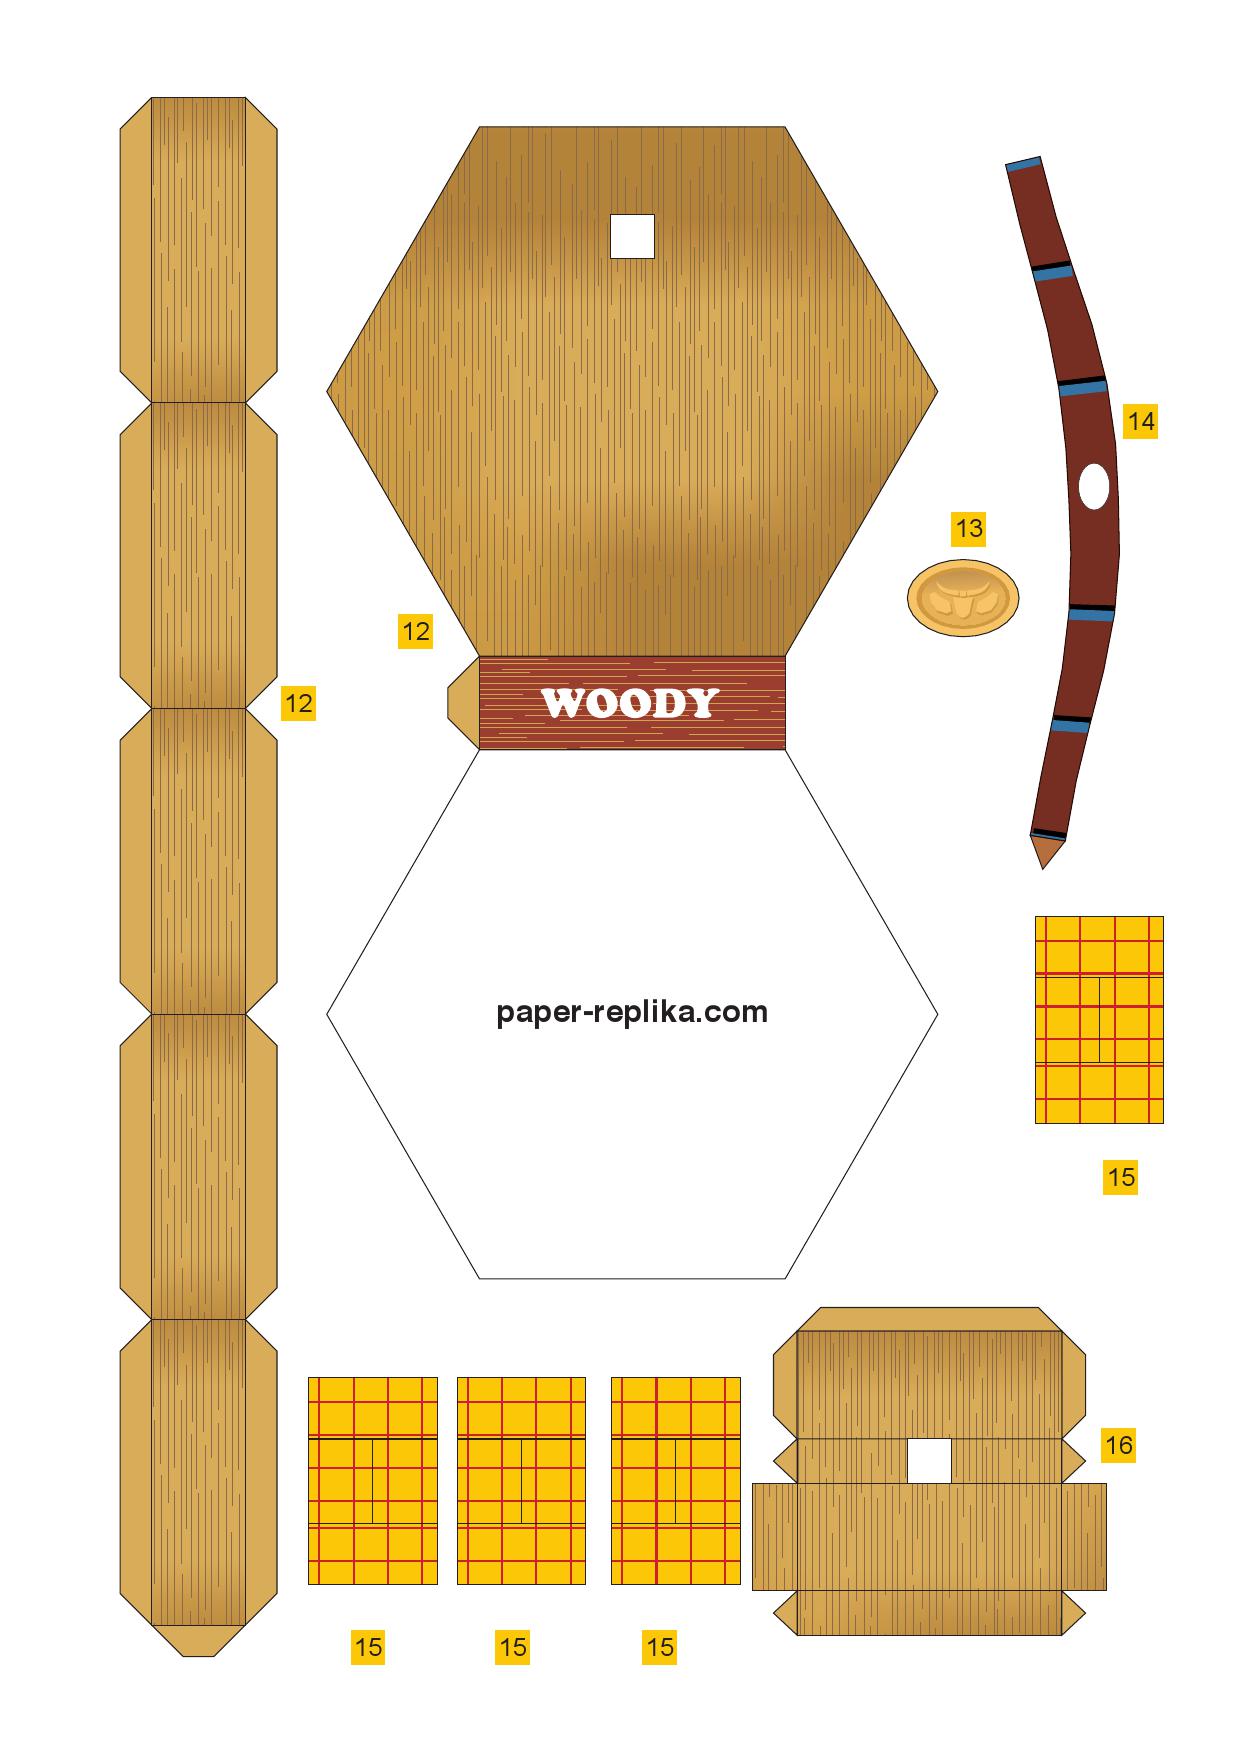 Papierowy model: Woody (Toy Story)